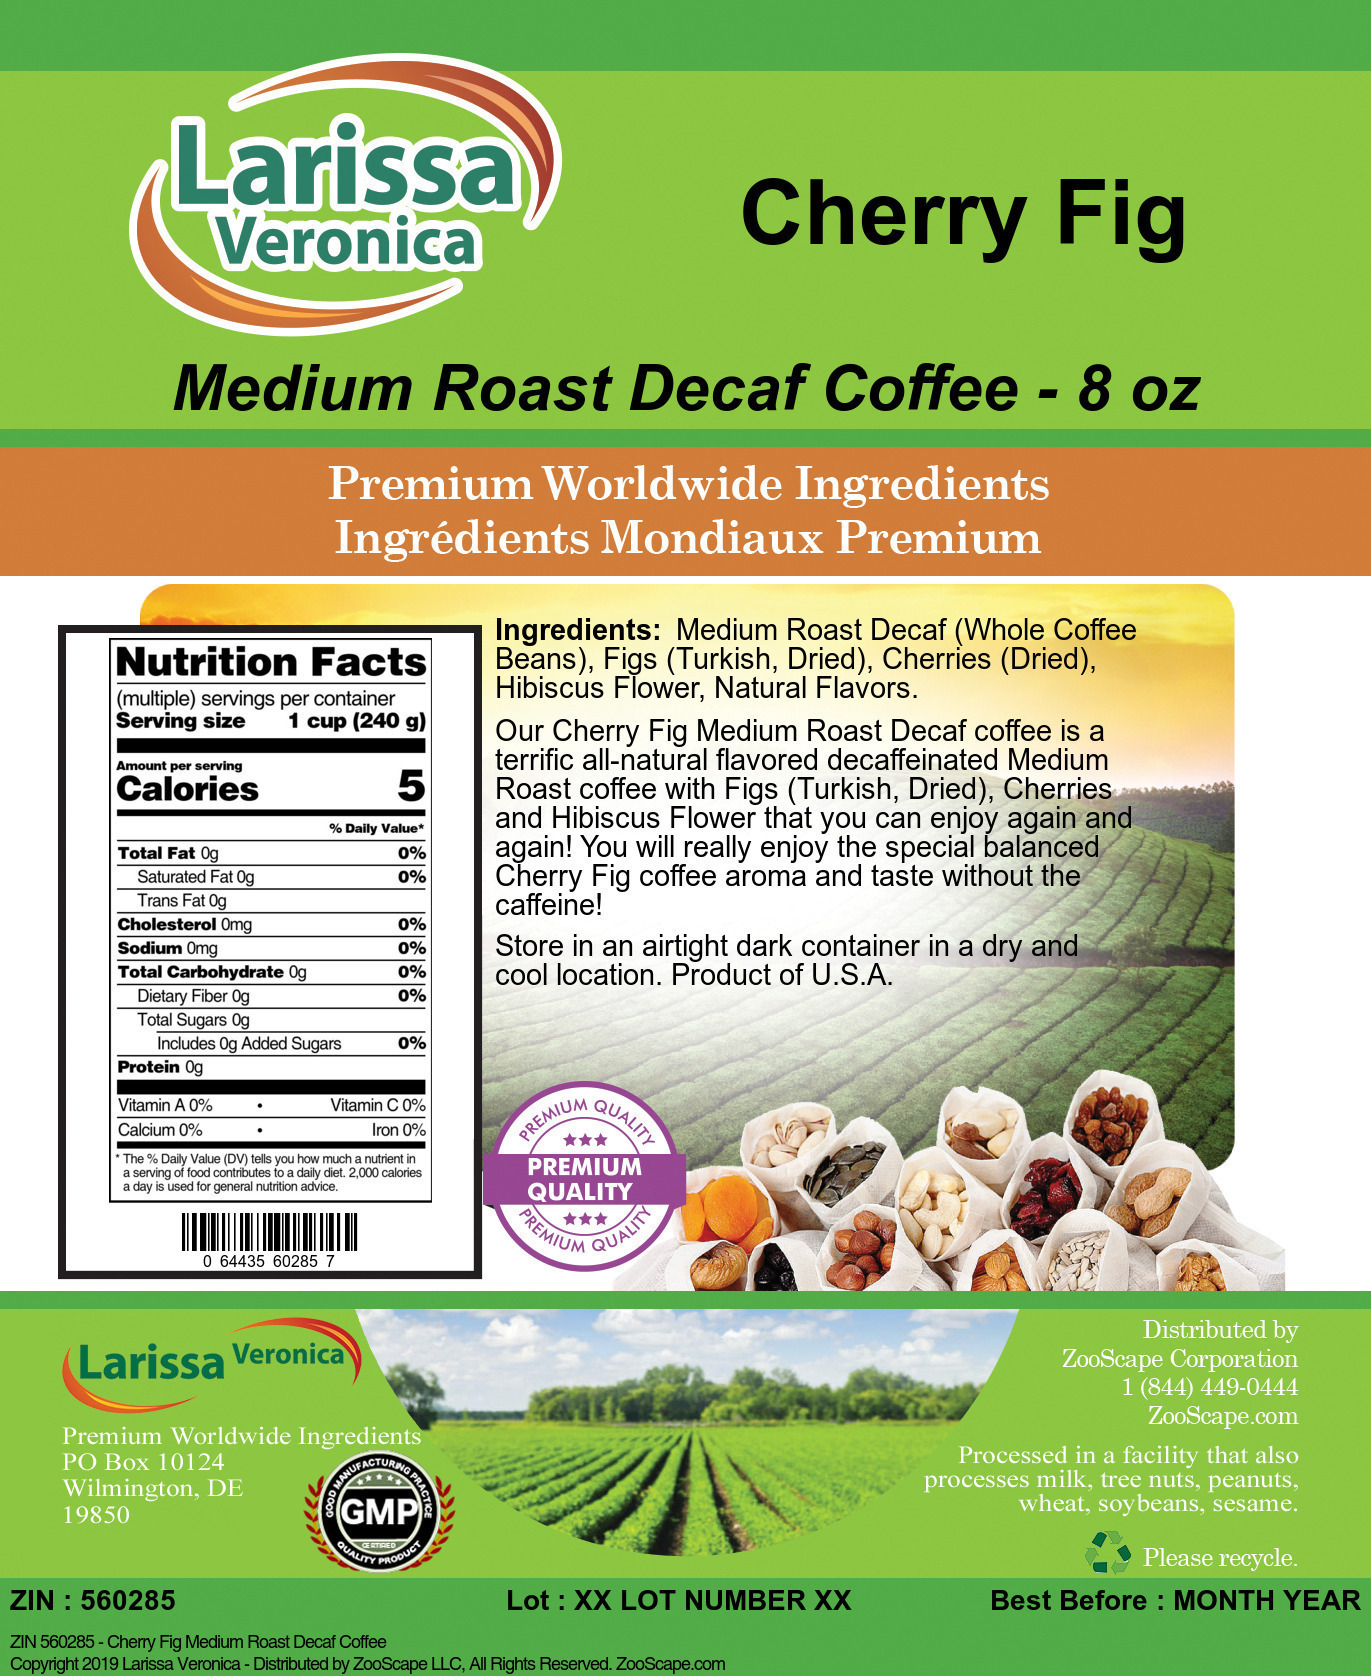 Cherry Fig Medium Roast Decaf Coffee - Label